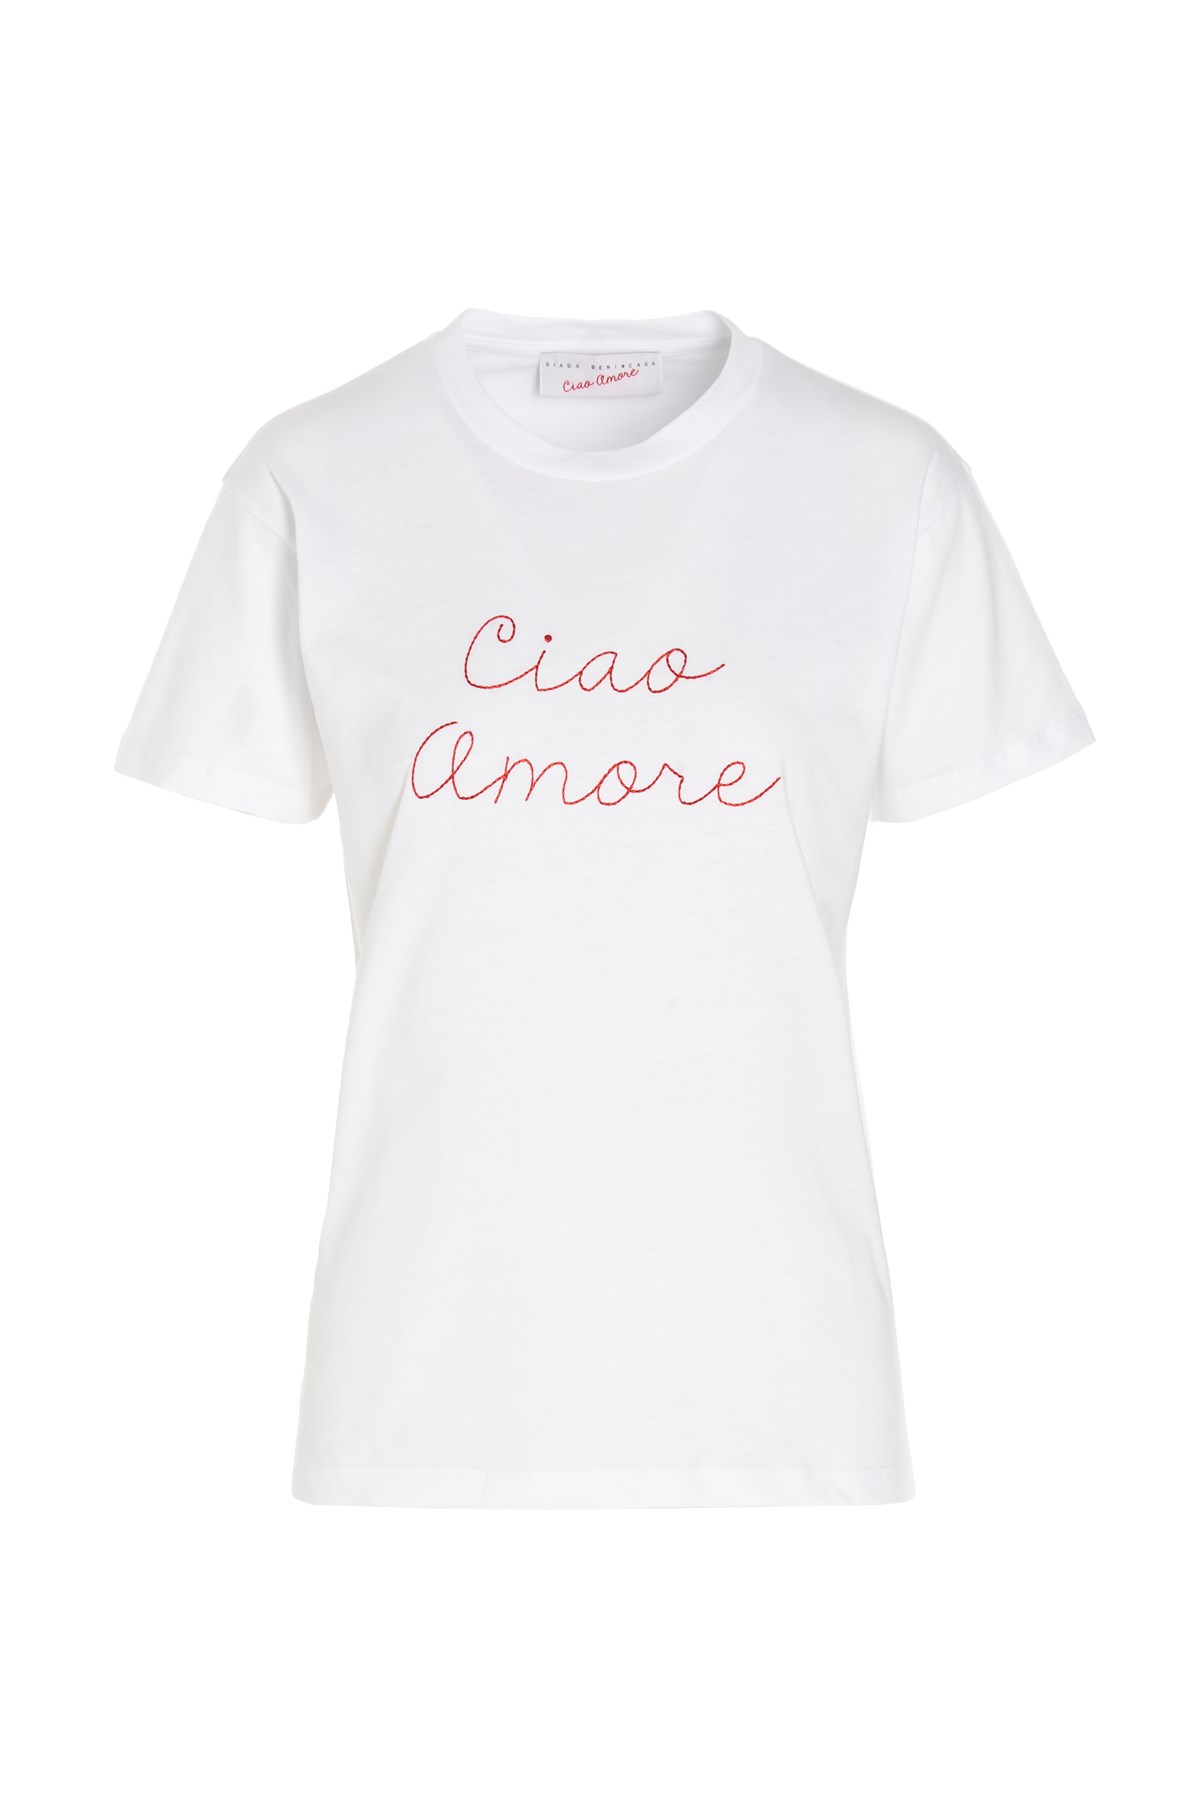 GIADA BENINCASA T-Shirt 'Ciao Amore'